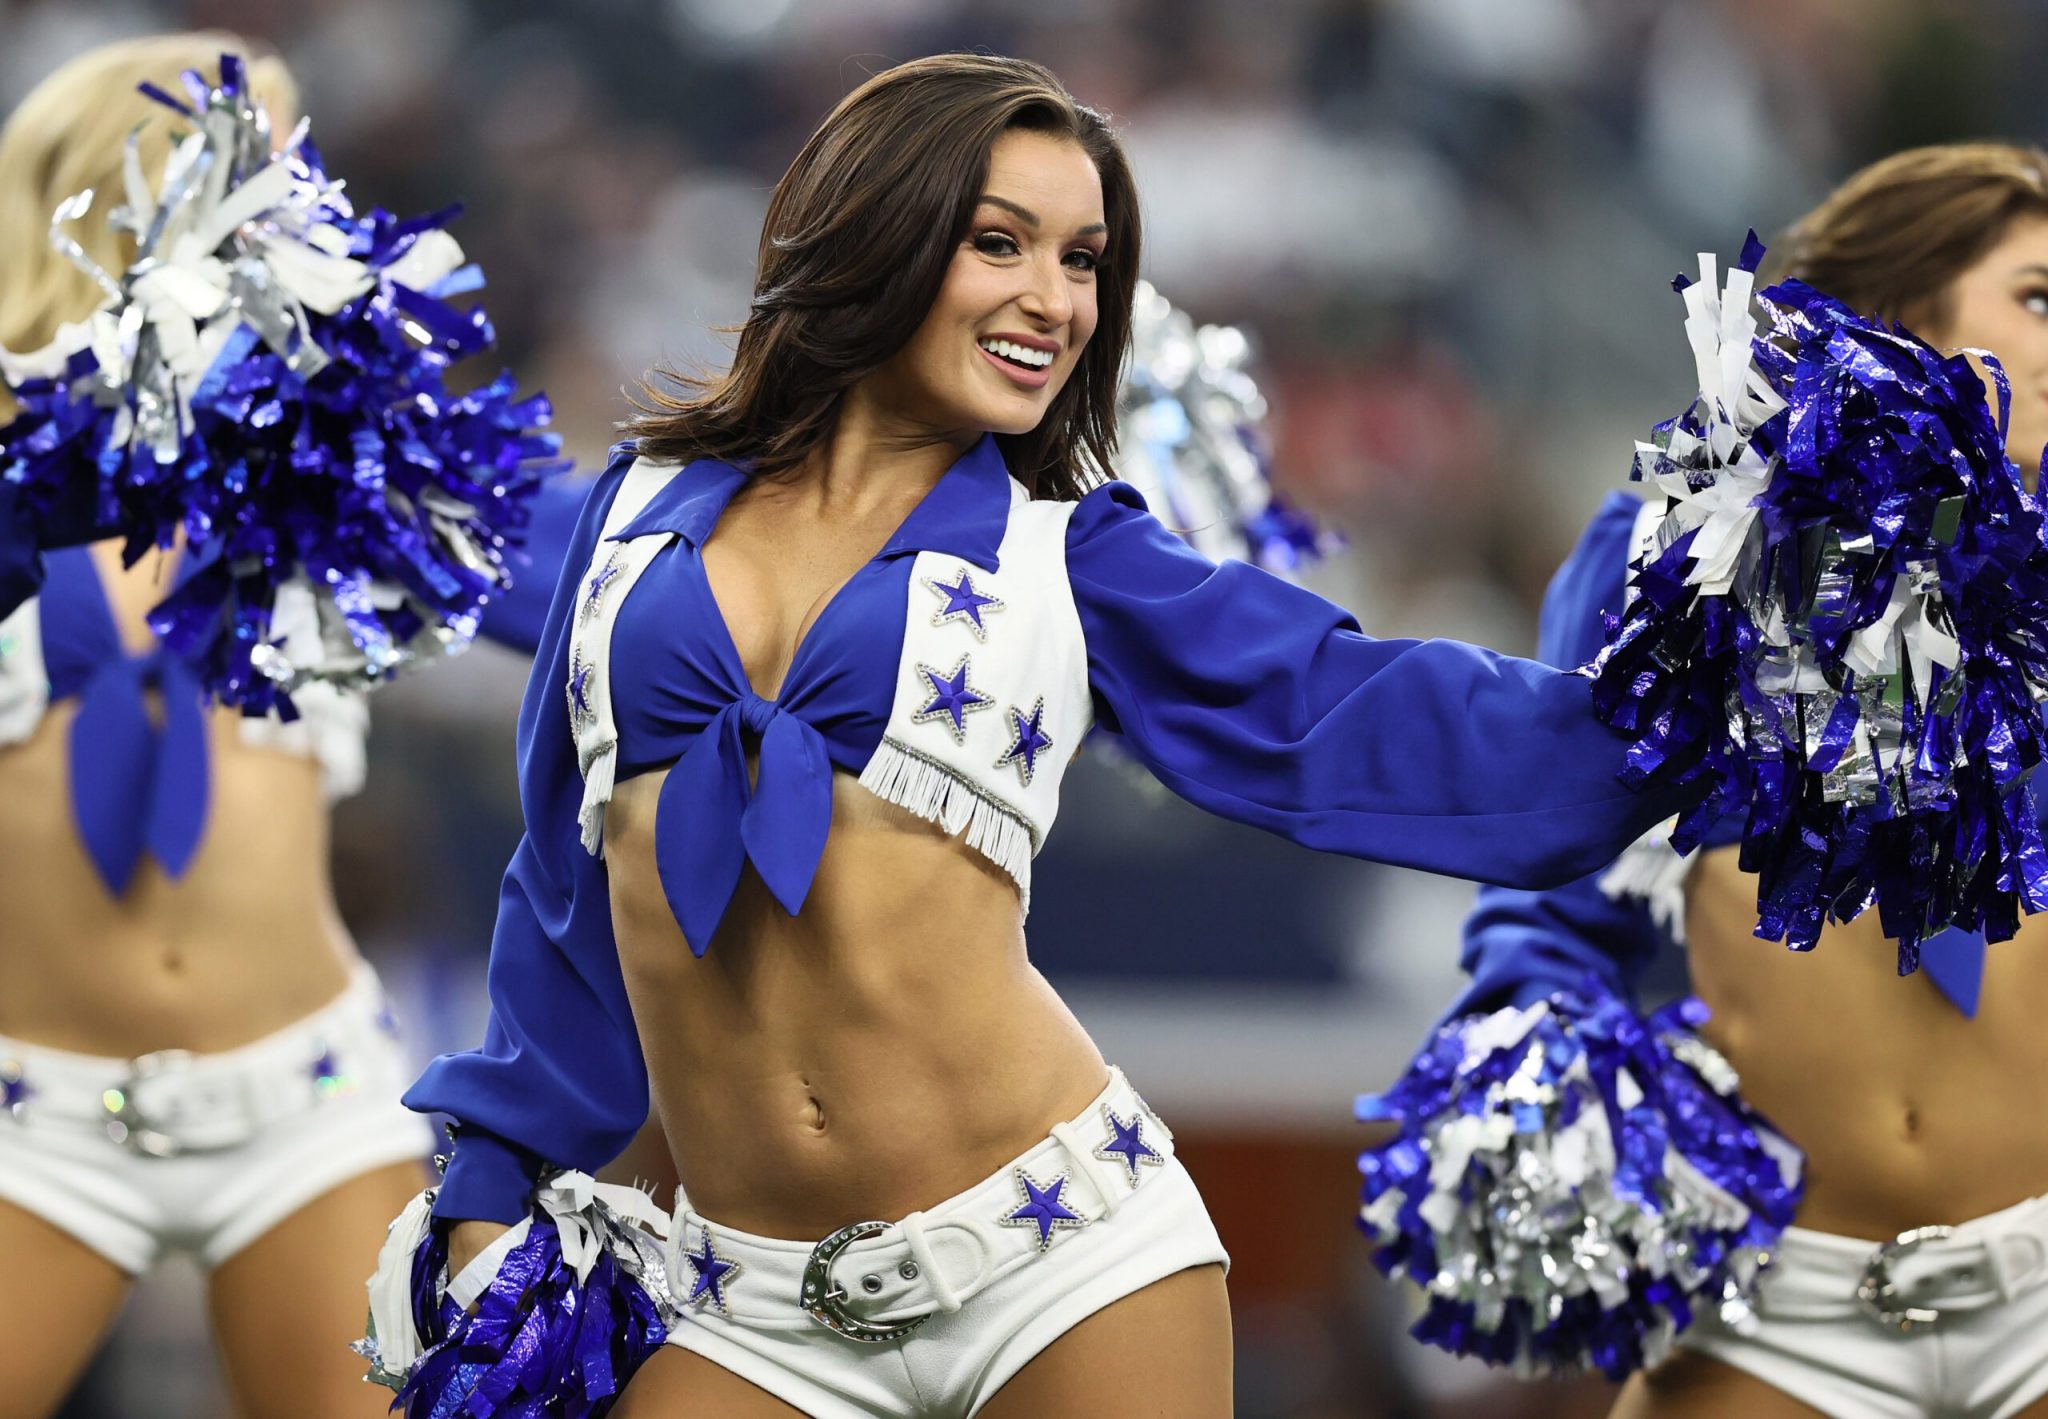 About Dallas Cowboys Cheerleaders Popularity, Uniform, Salary